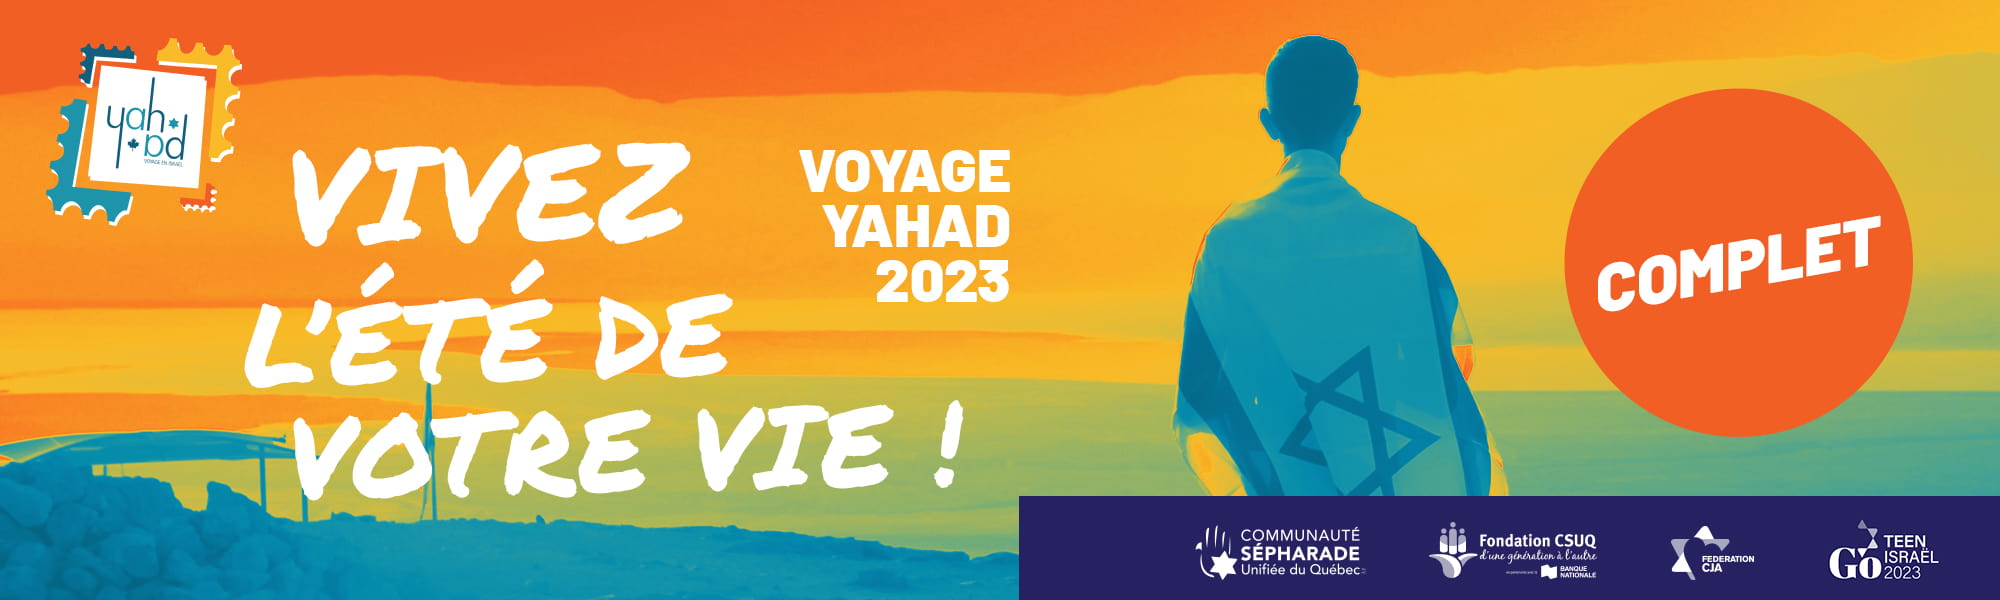 Voyage Yahad 2023 COMPLET